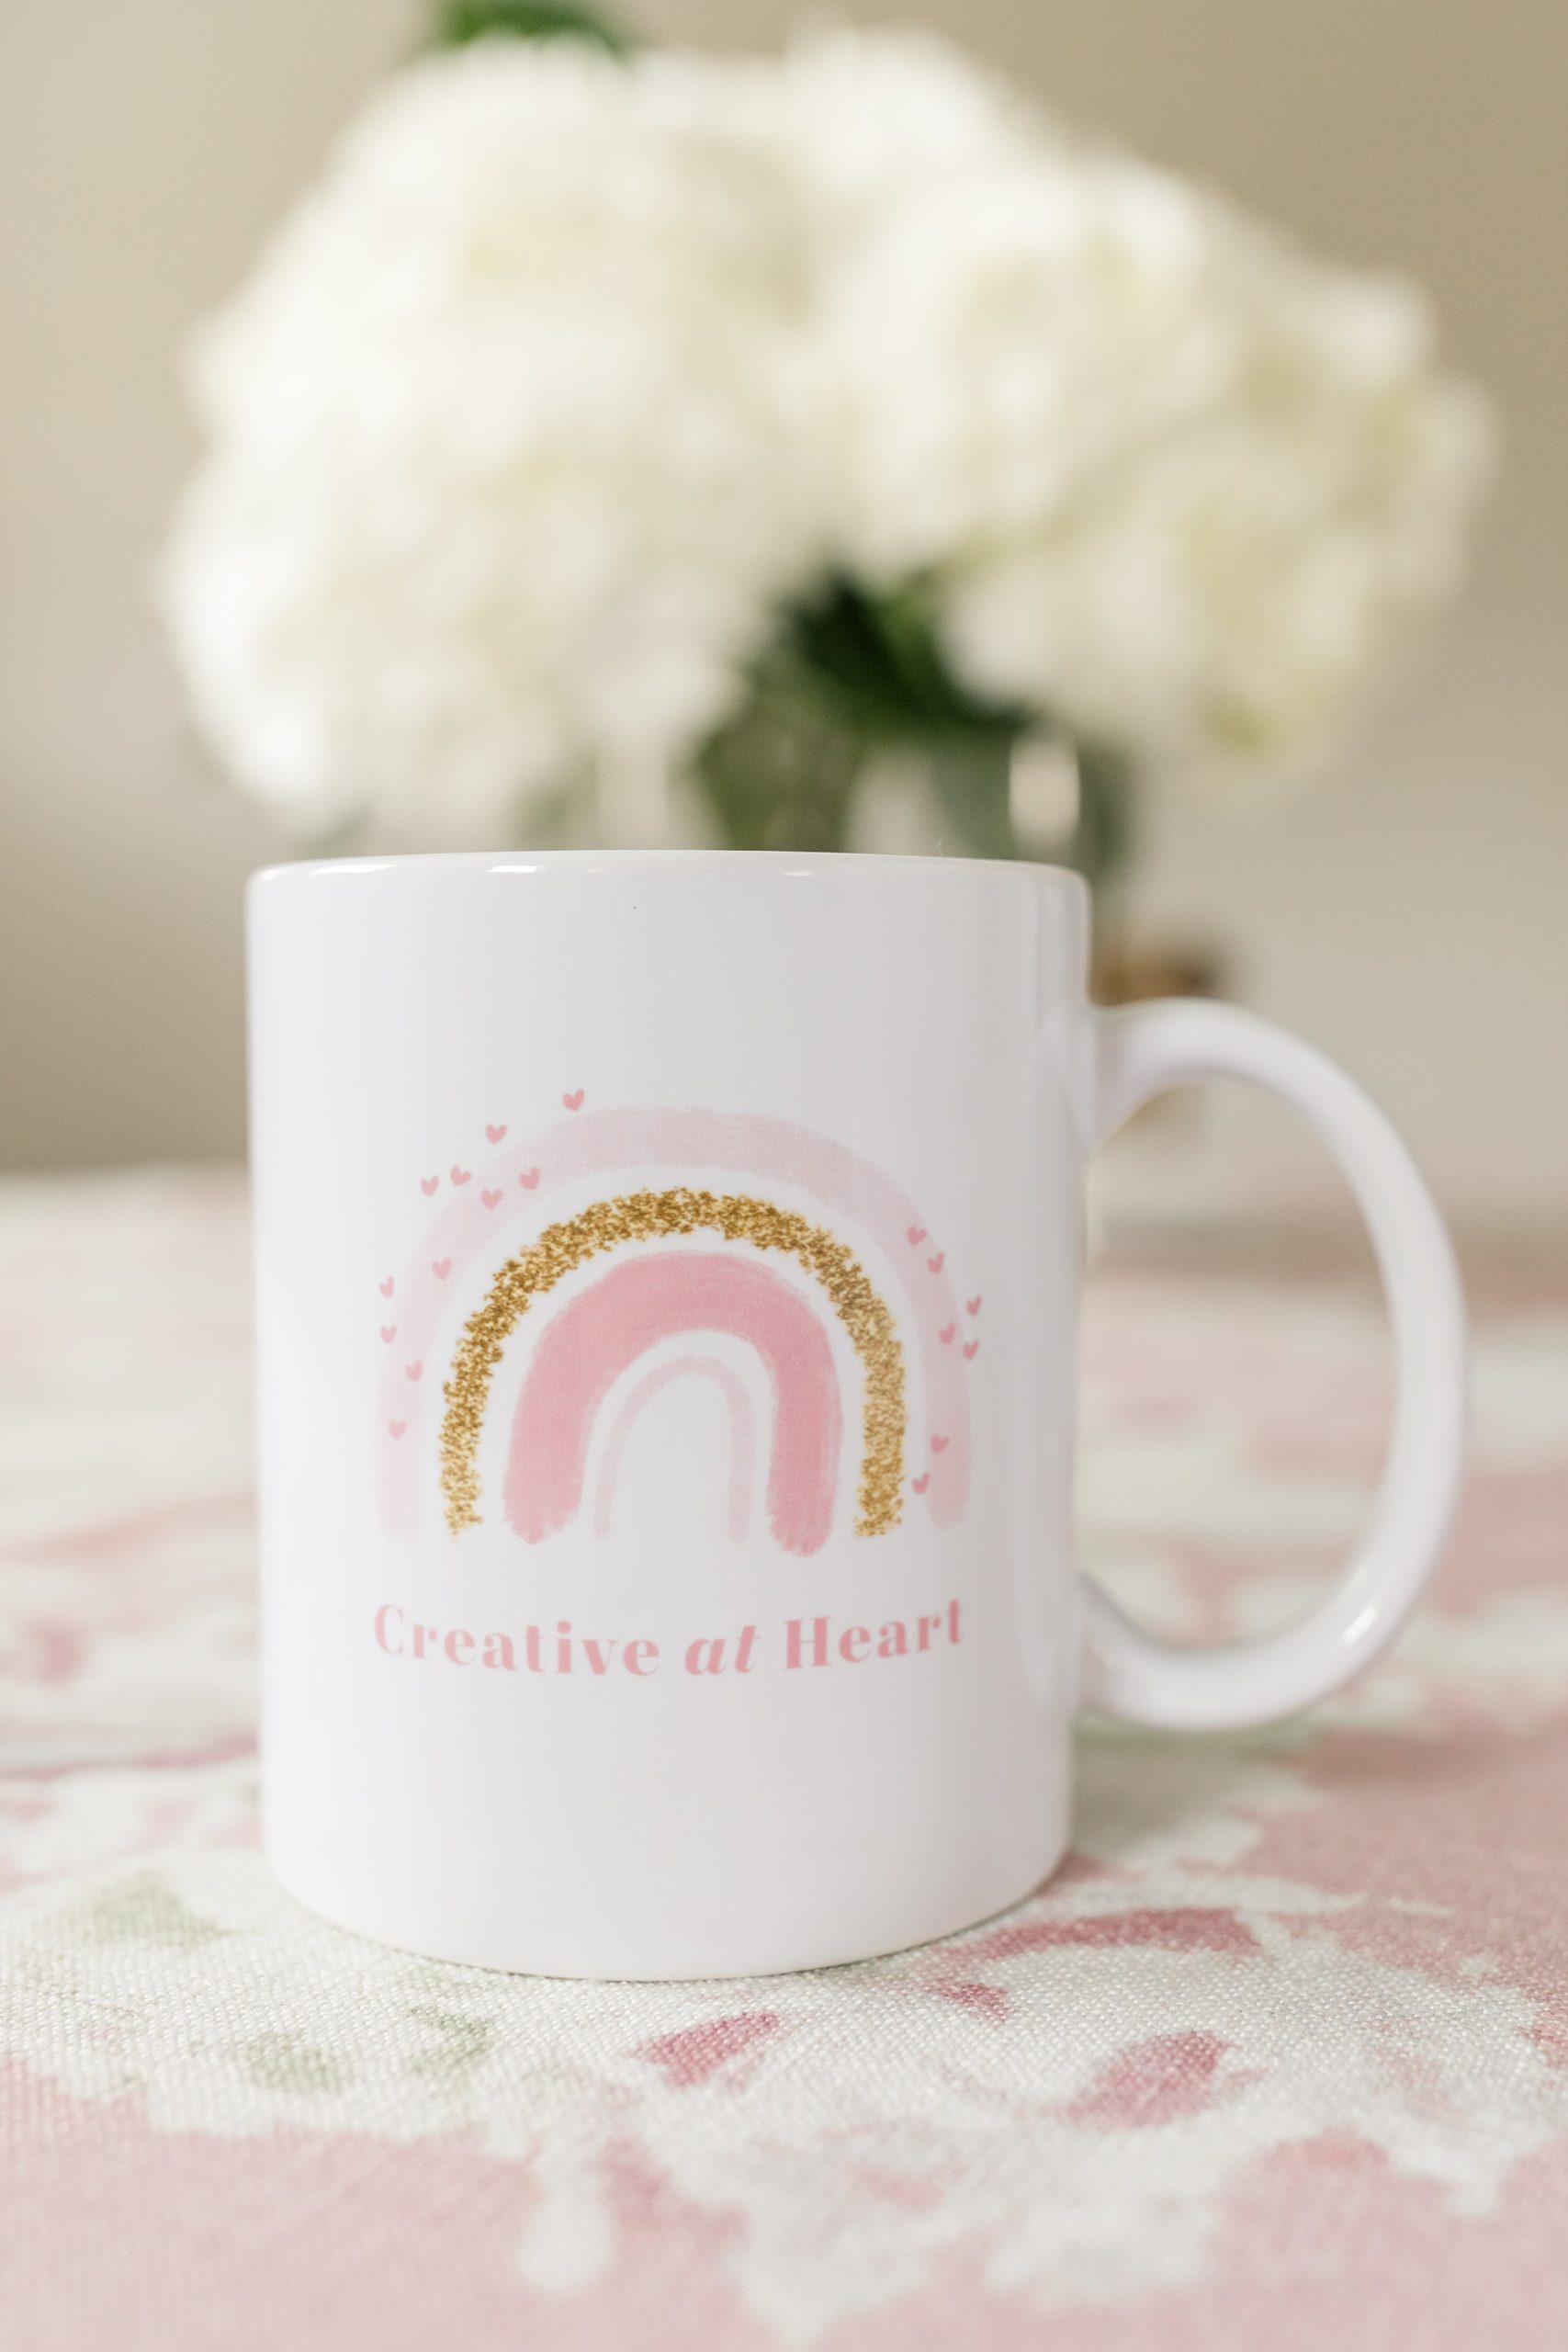 Creative at Heart mug